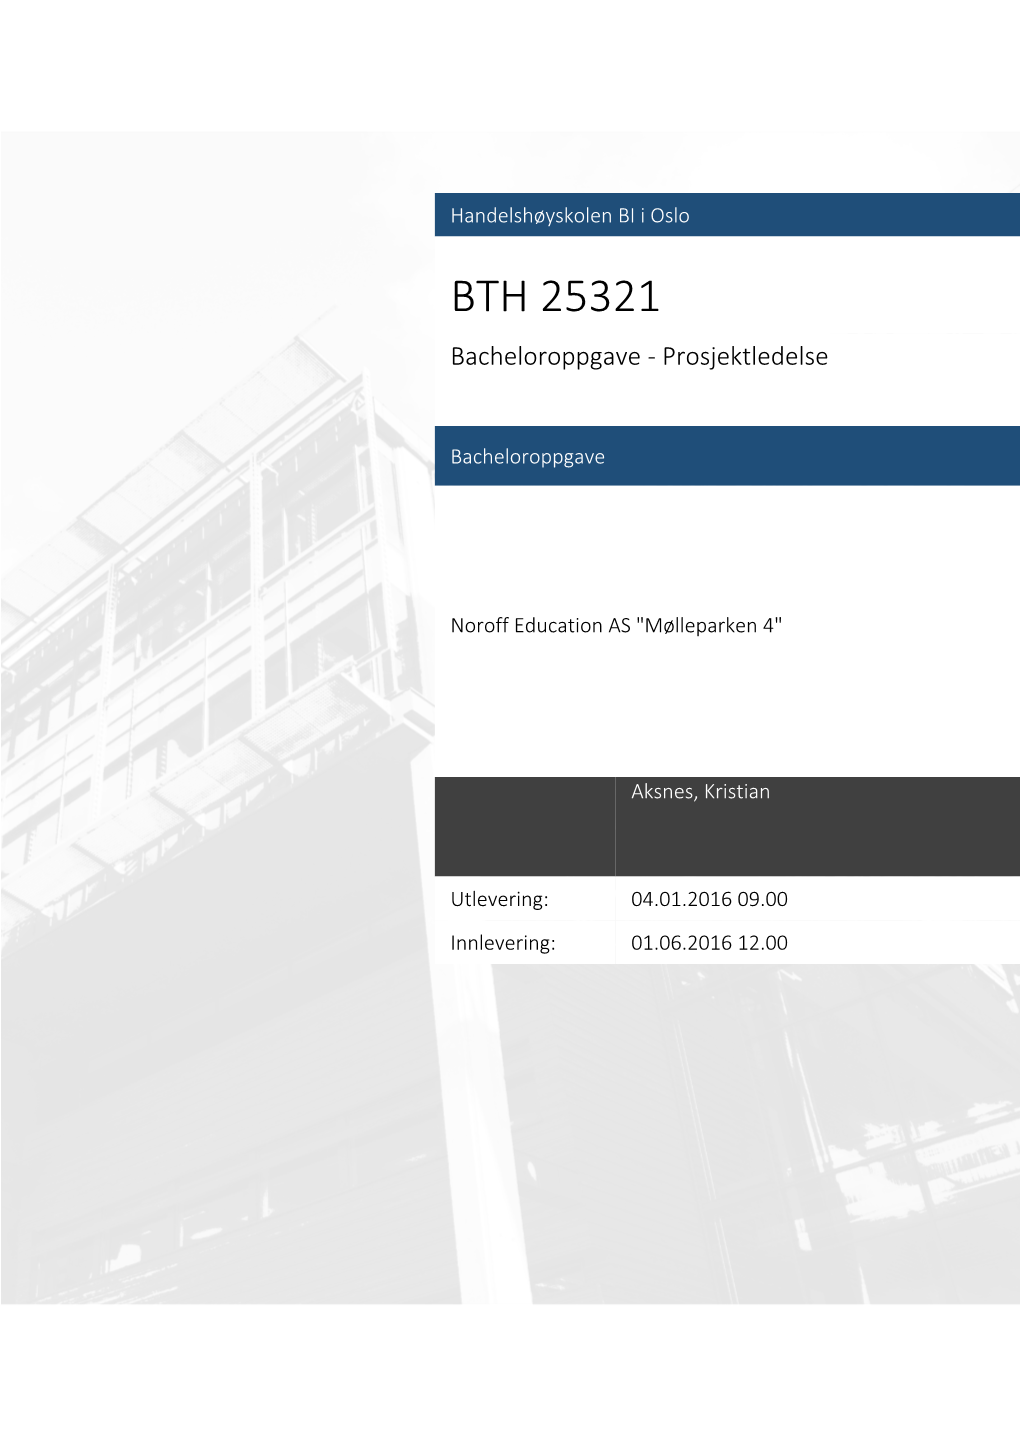 BTH 25321 Bacheloroppgave - Prosjektledelse